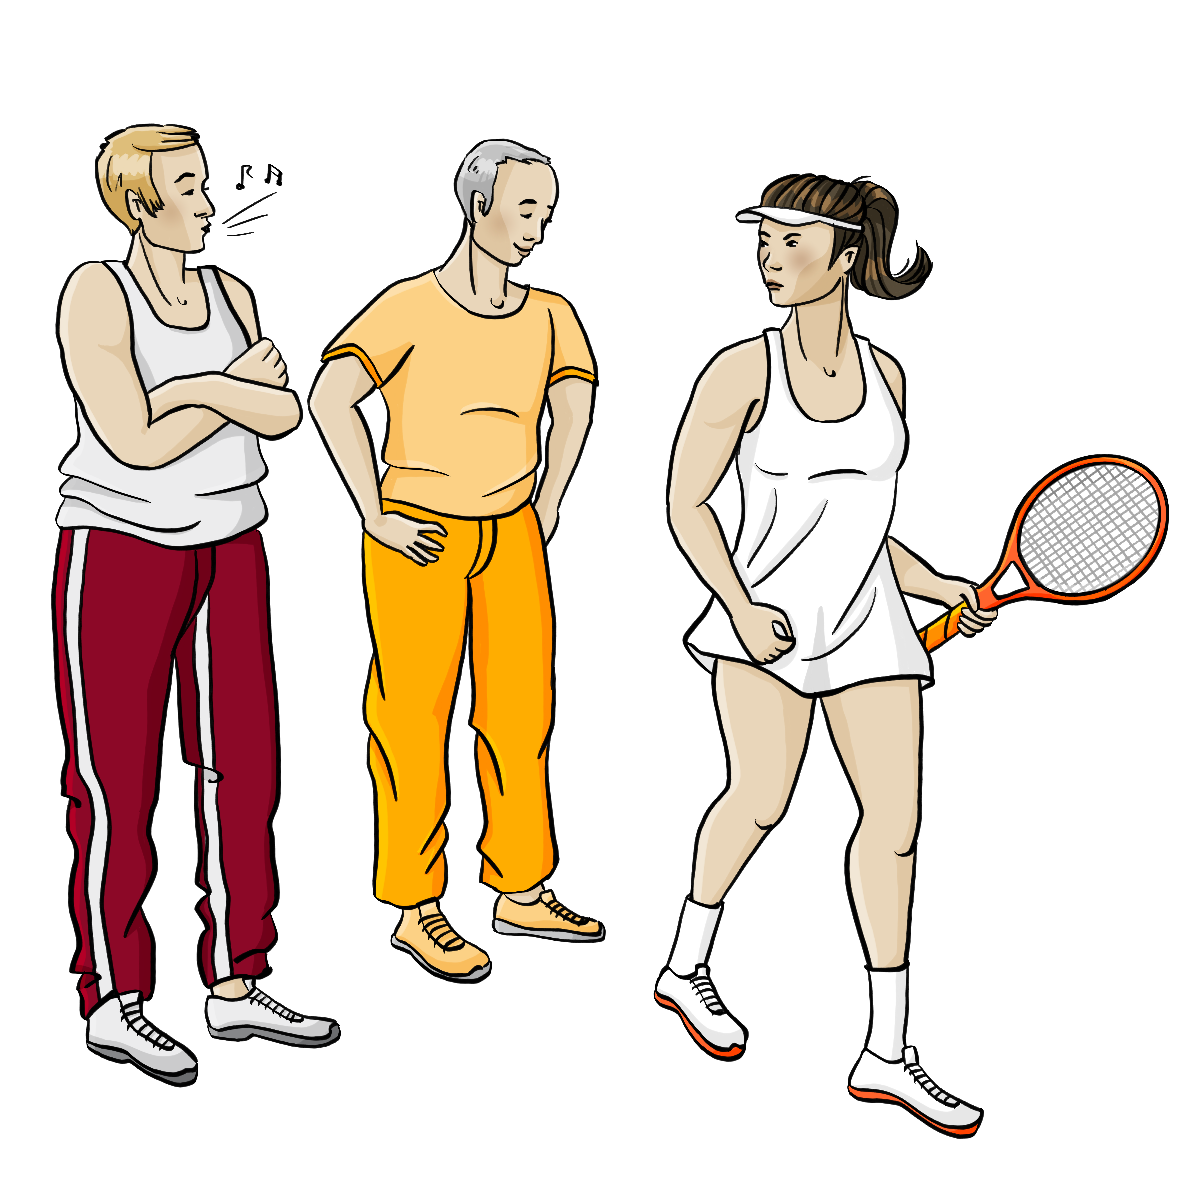 Zwei Männer in Sportkleidung schauen einer Frau hinterher. Der eine Mann pfeift. Die Frau trägt ein kurzes Tenniskleid und einen Tennisschläger. Sie schaut wütend. 